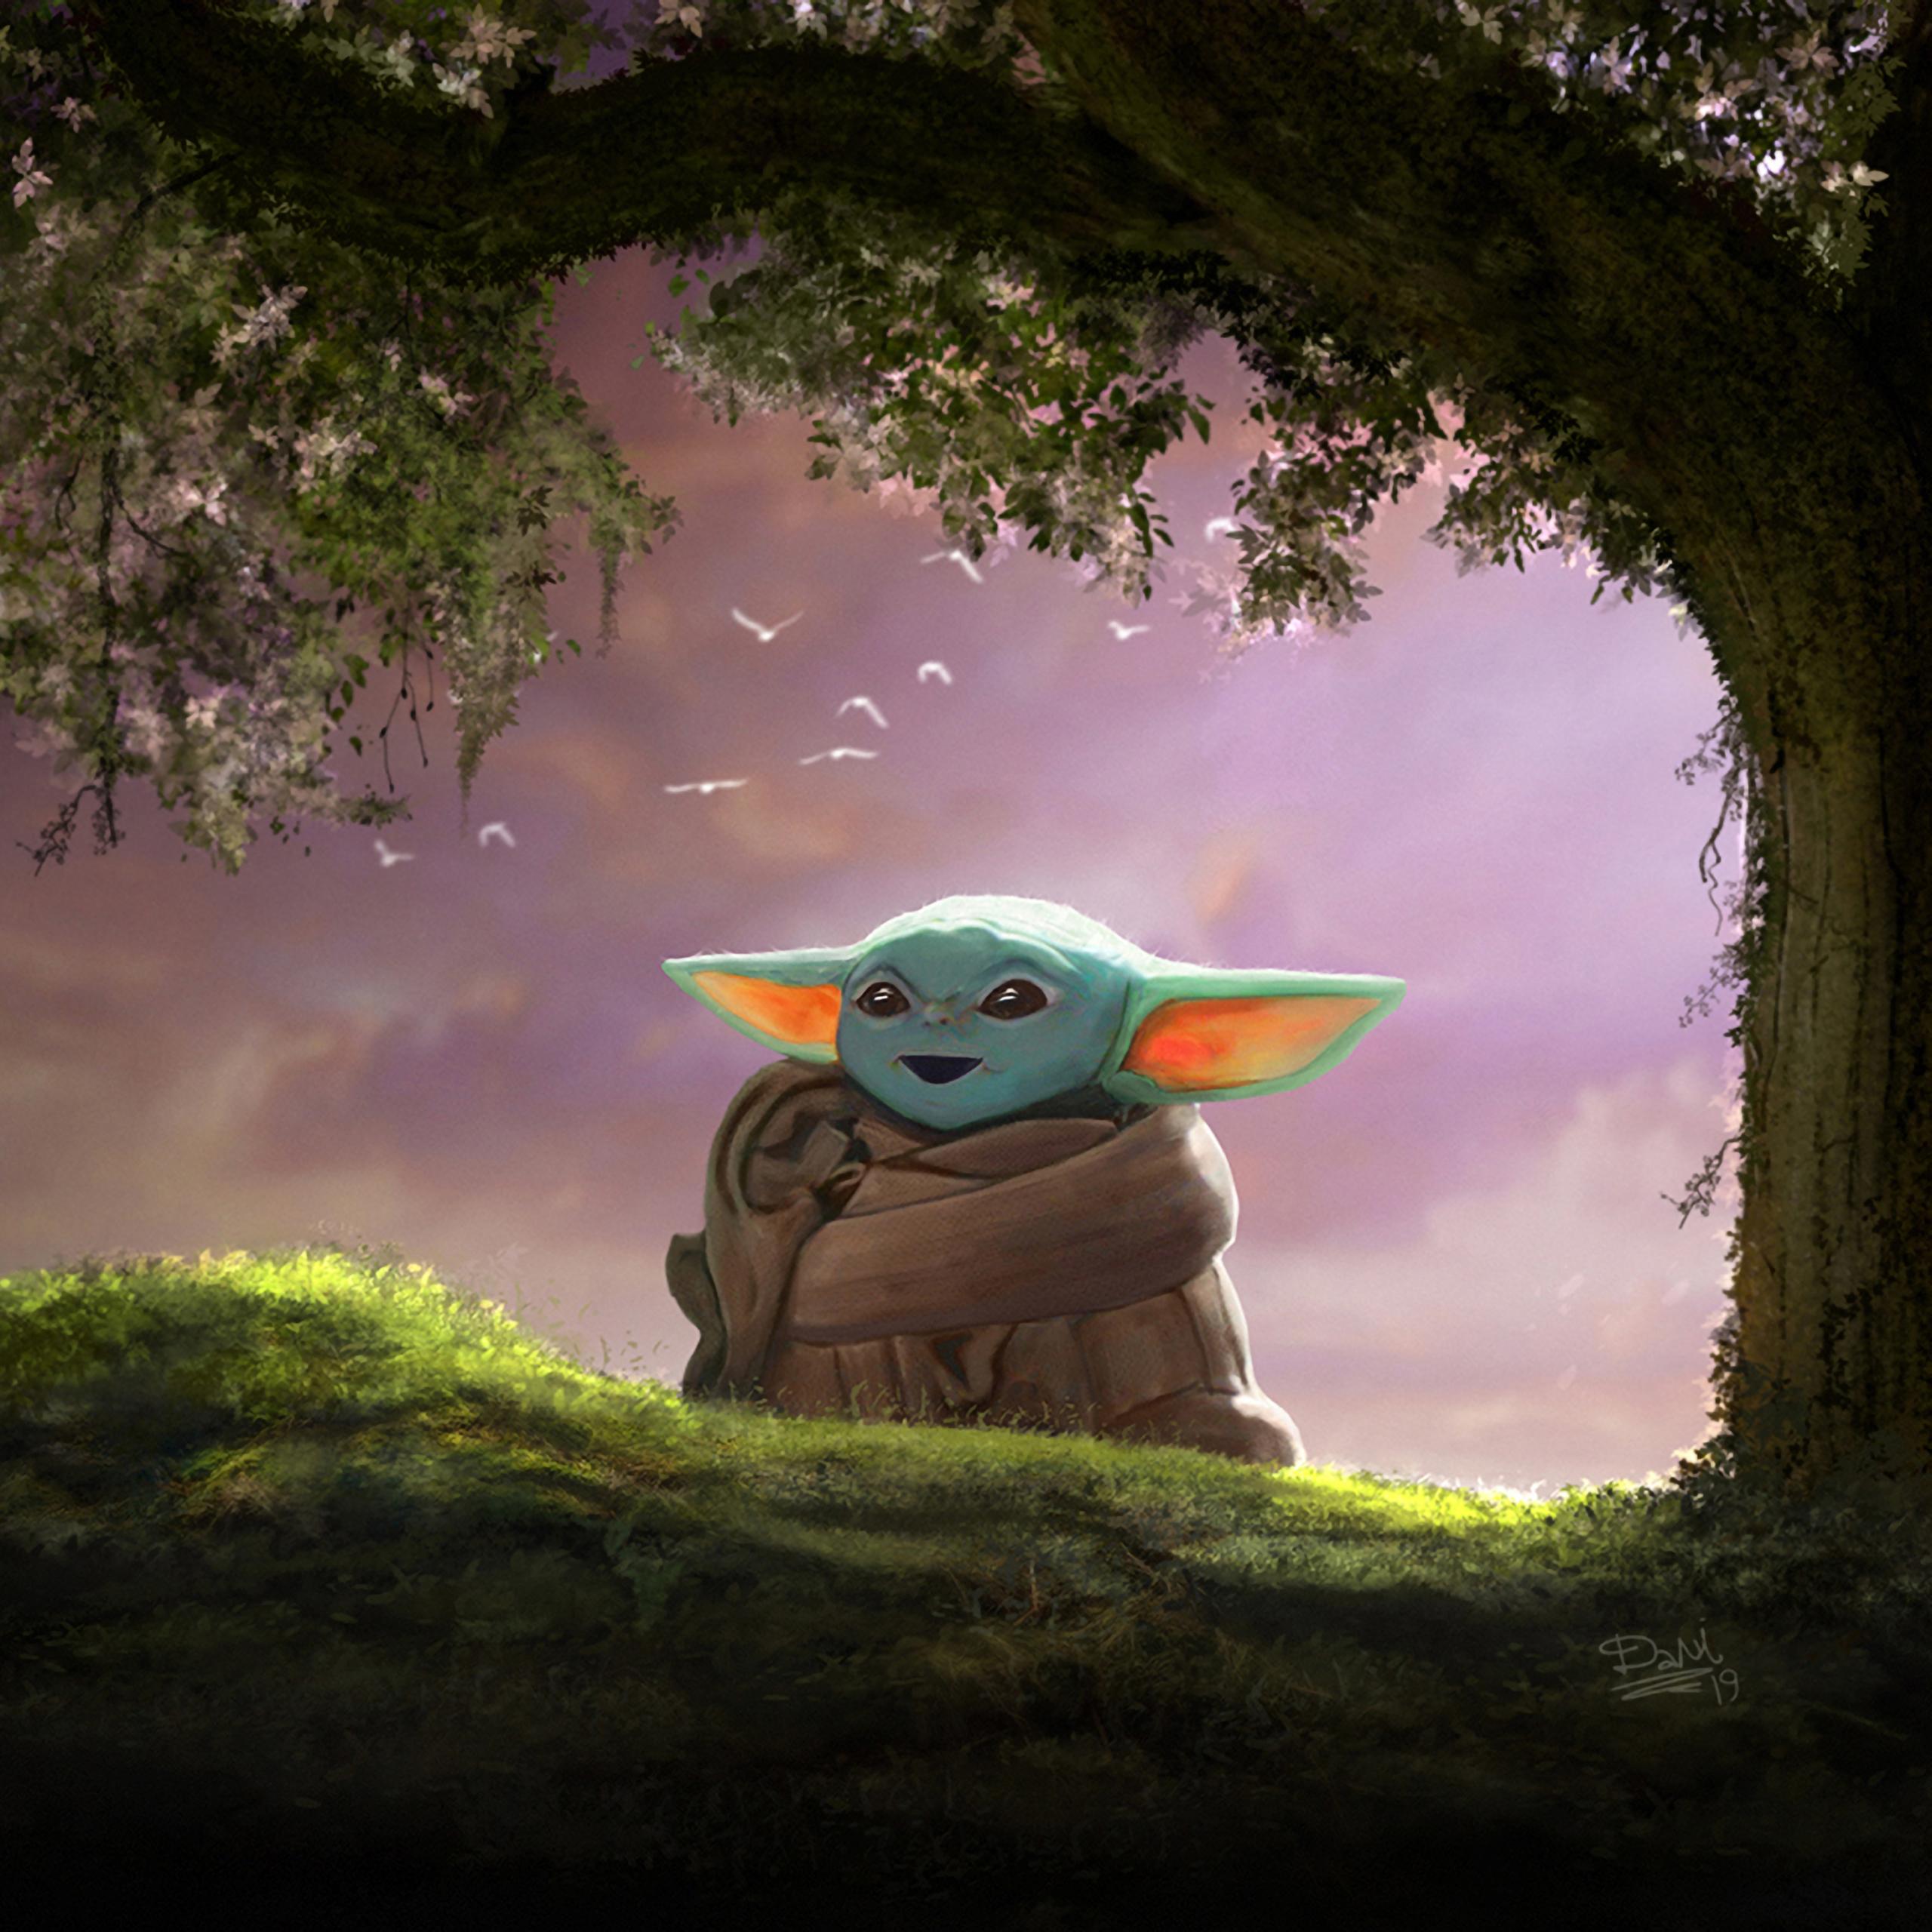 Hình nền Baby Yoda đáng yêu (Cute Baby Yoda wallpapers): Nếu bạn đang tìm kiếm một hình nền độc đáo và đáng yêu cho điện thoại hay máy tính của mình, hình nền Baby Yoda chắc chắn là một lựa chọn tuyệt vời. Hãy xem ngay những hình nền Baby Yoda đáng yêu và cùng thưởng thức màn hình của bạn được tô điểm bởi nhân vật này.